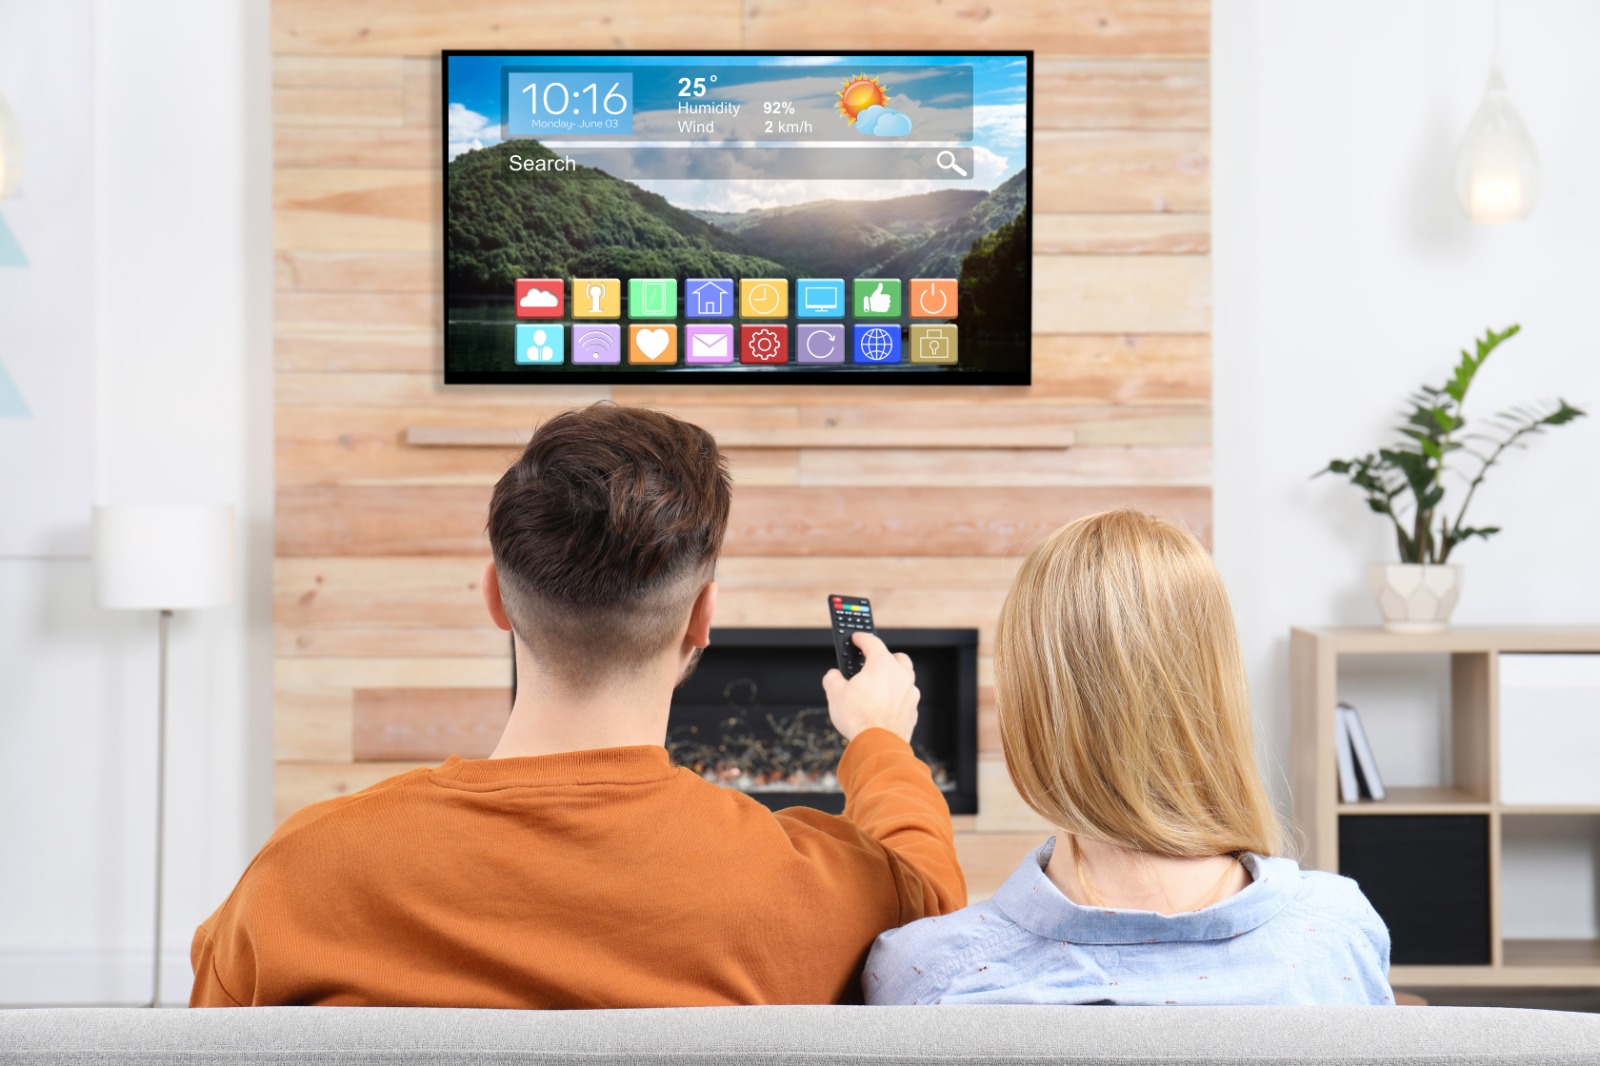 Scopri la guida di Assistente Tecnologico per configurare una nuova Smart Tv